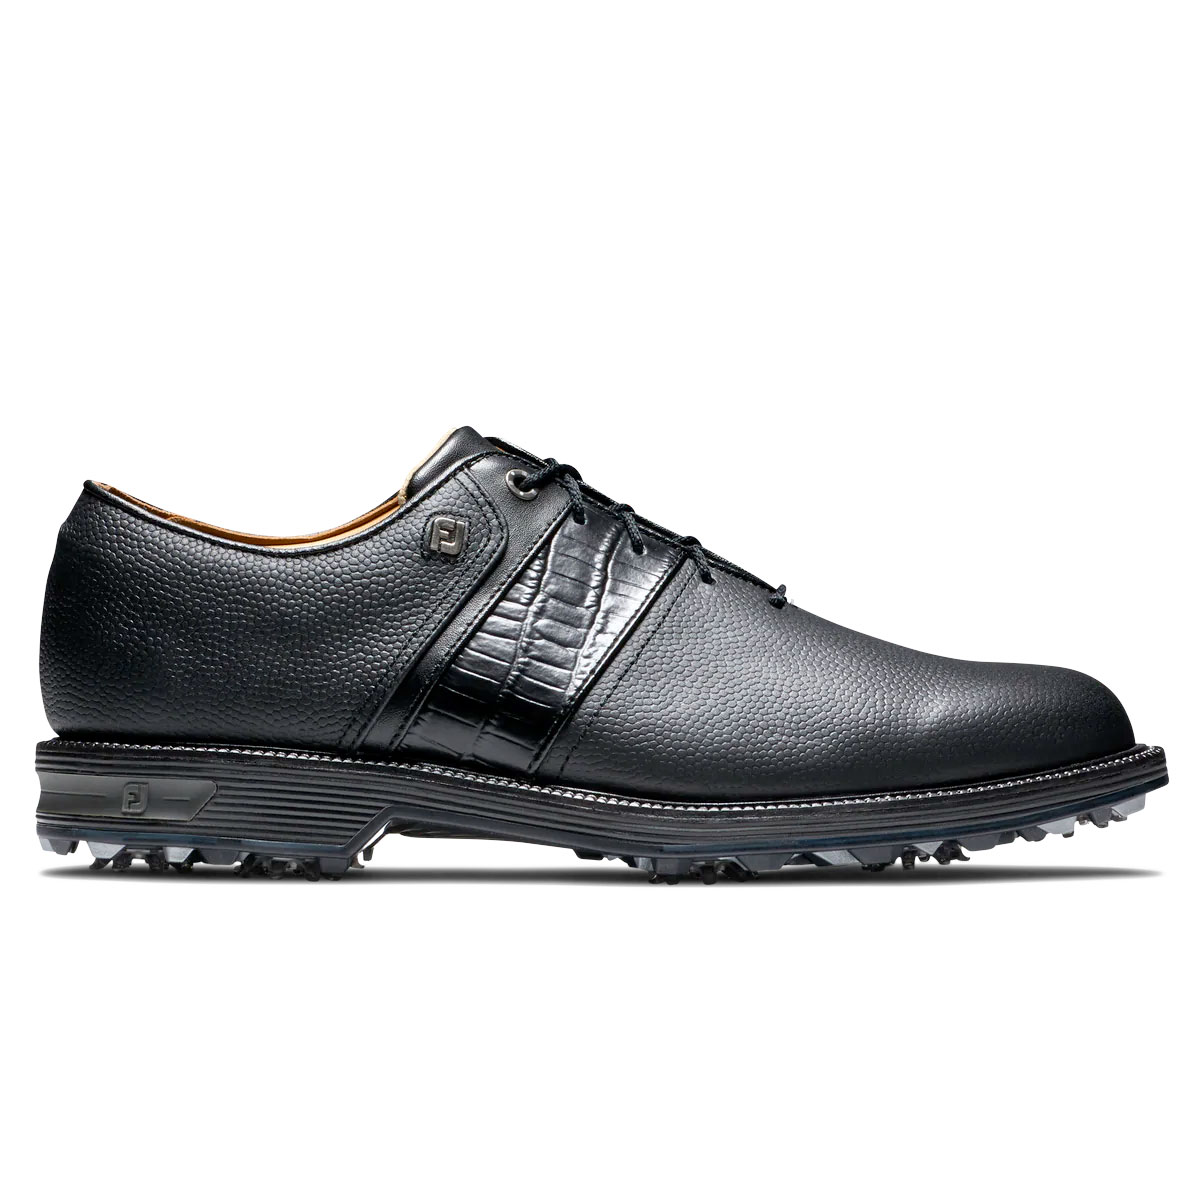 FootJoy DryJoys Premiere Series Packard Mens Golf Shoes  - Black